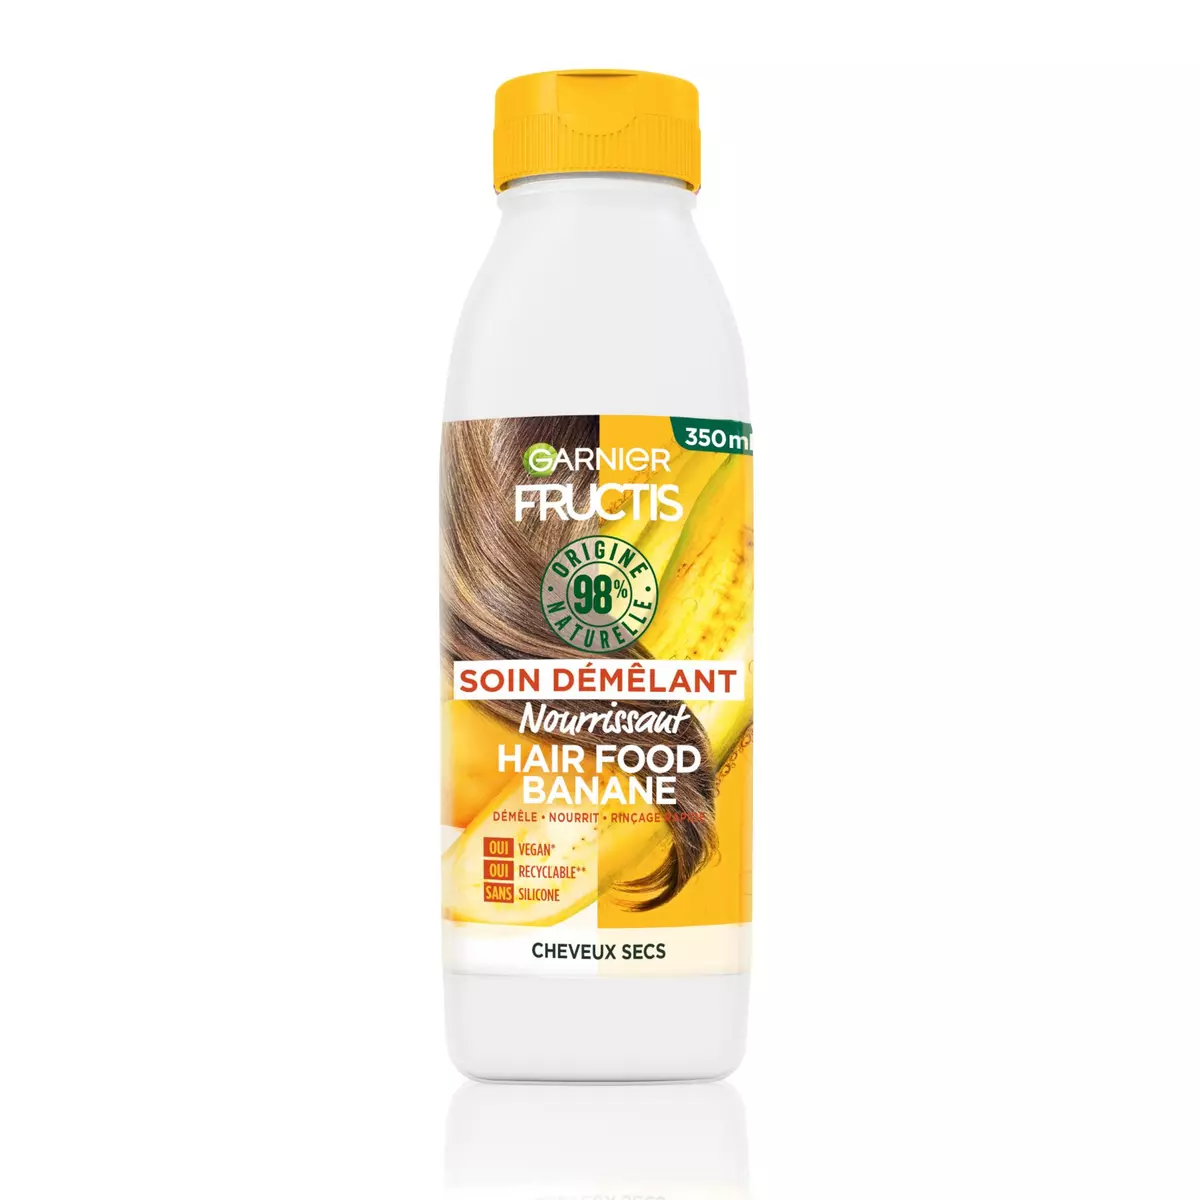 FRUCTIS Hair Food Soin démêlant vegan à la banane pour cheveux secs 350ml